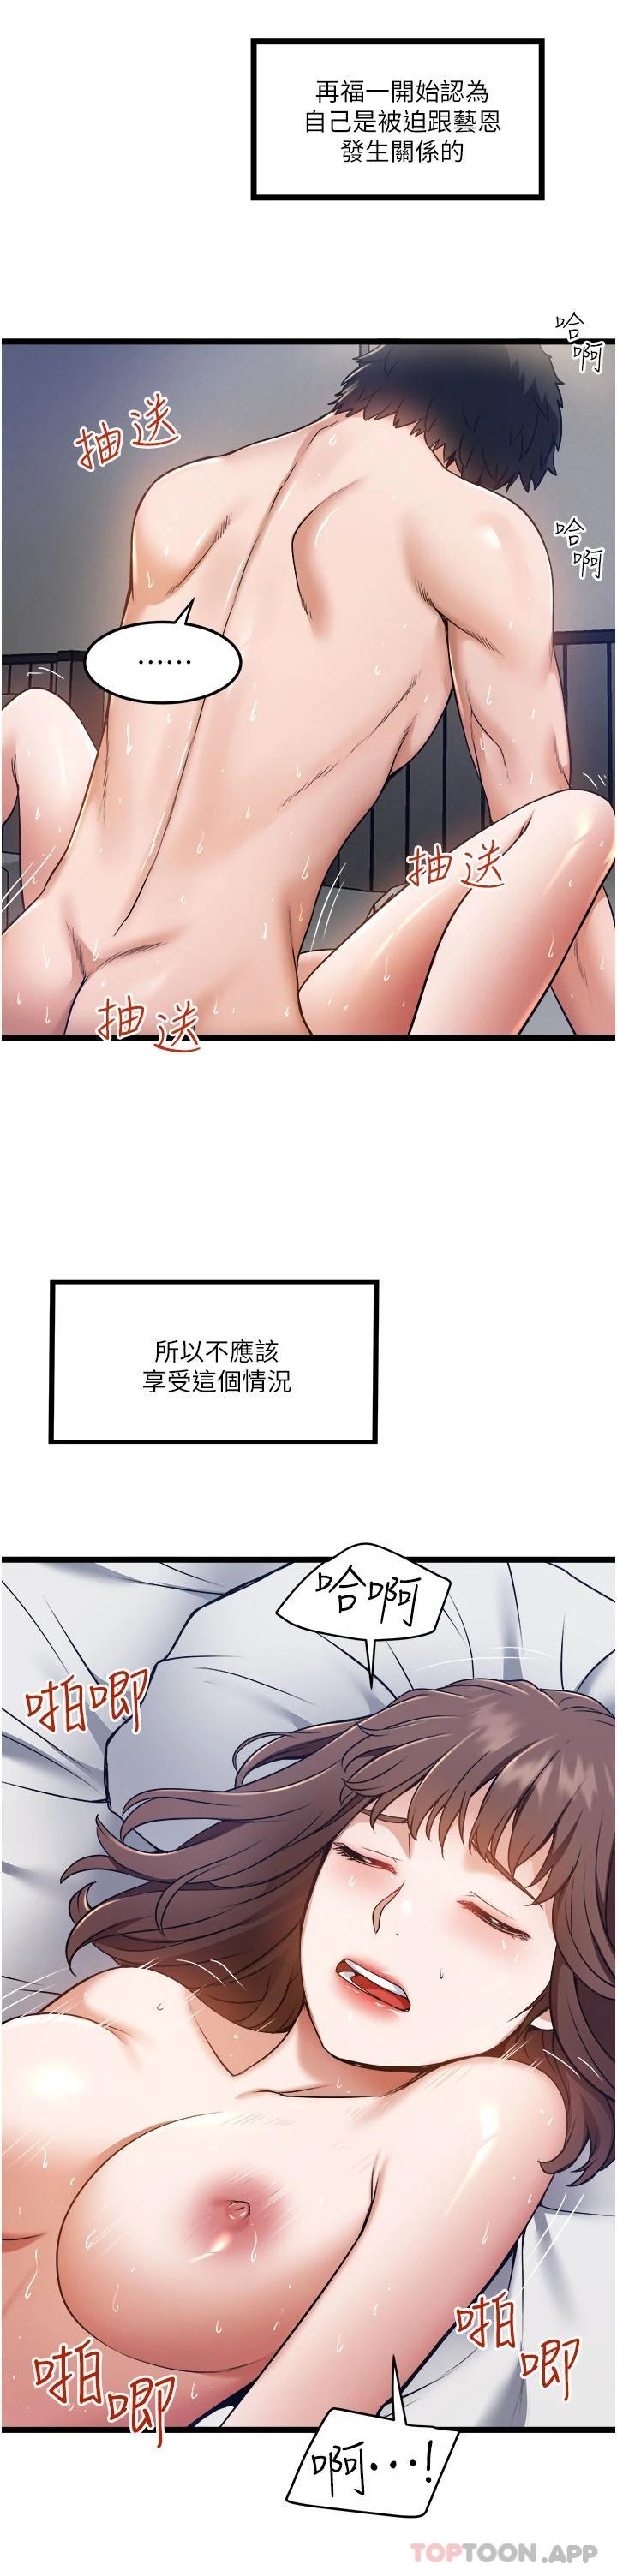 韩国污漫画 私人司機 第7话 尽情抽插青涩女大生 11